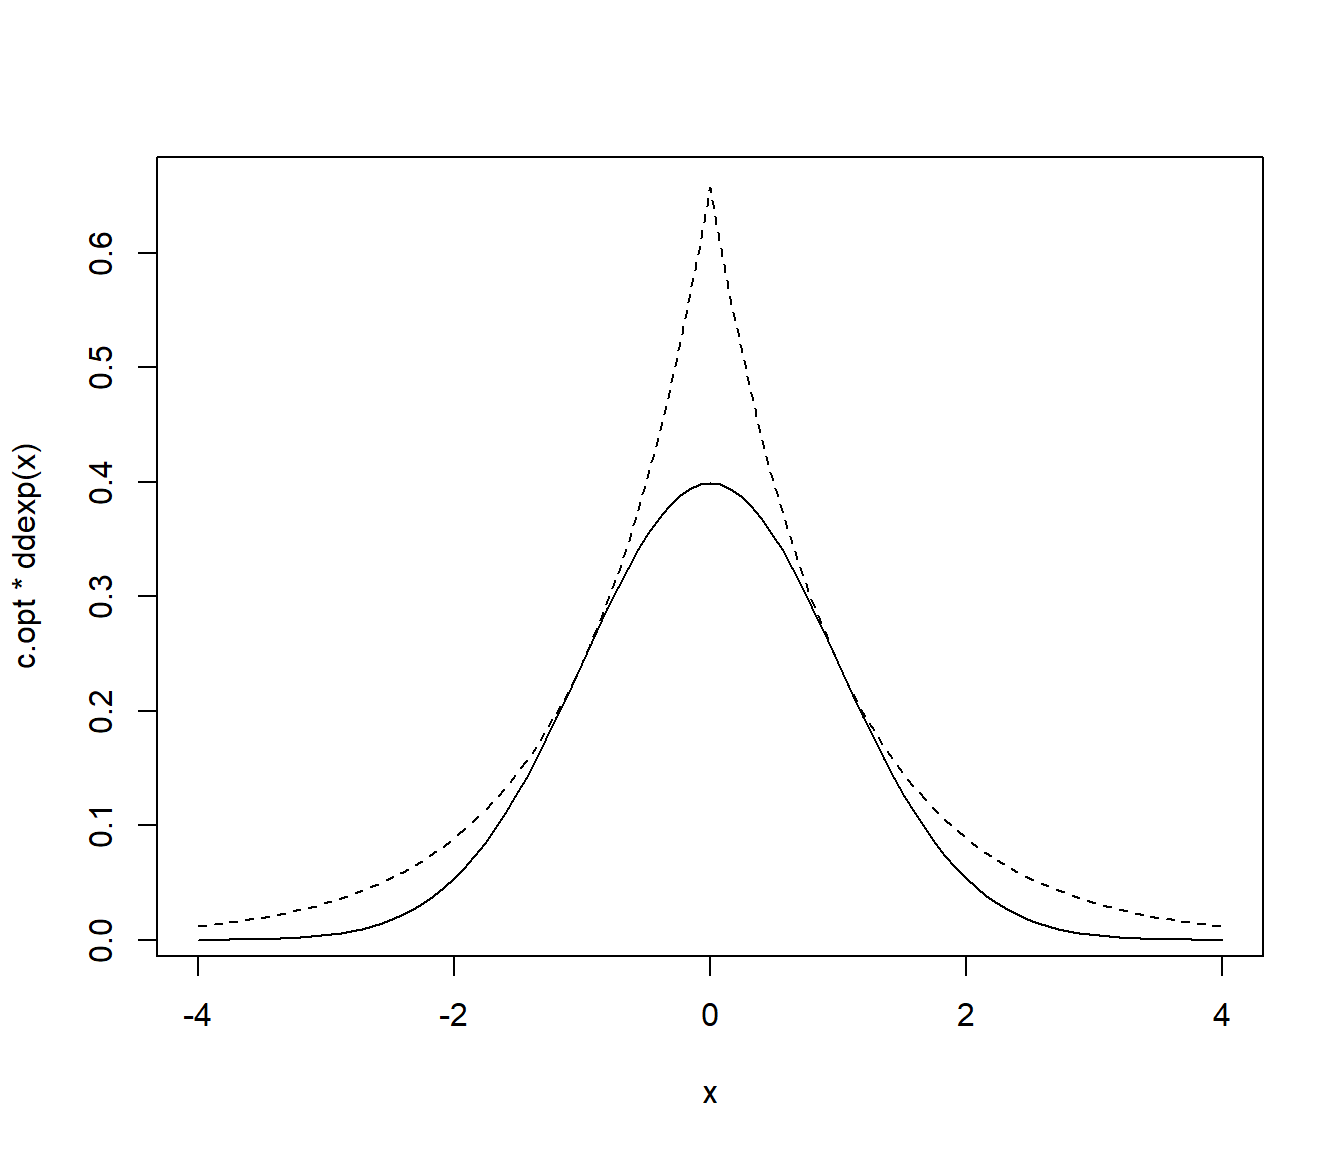 Densidad objetivo (normal estándar, línea continua) y densidad auxiliar (doble exponencial, línea discontinua) reescalada.